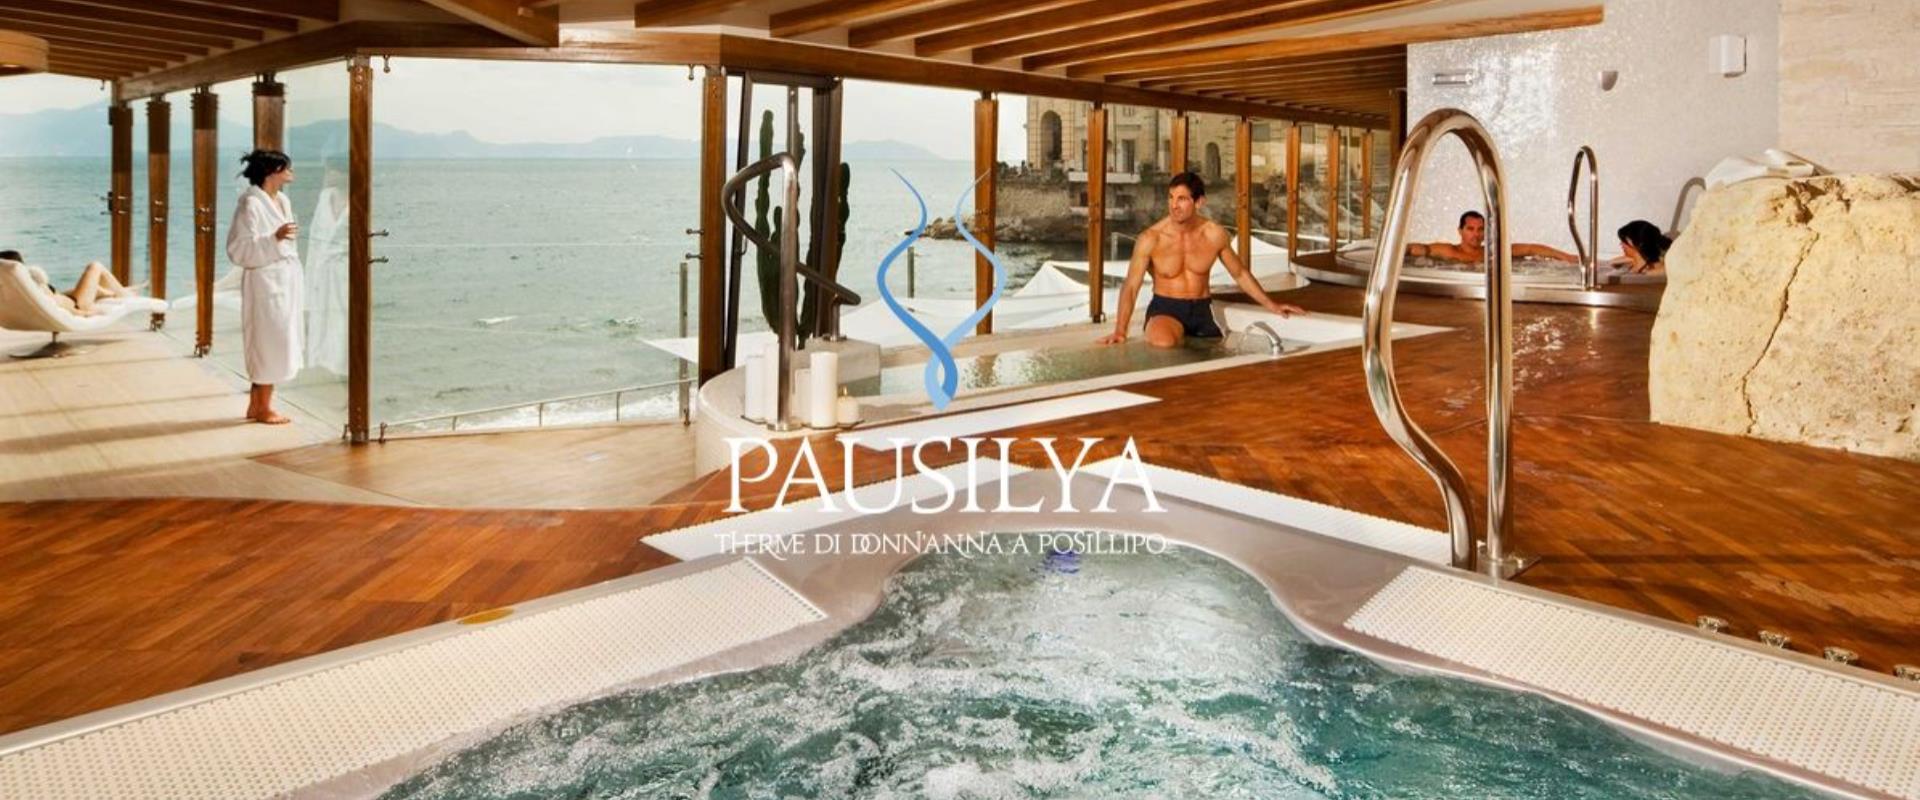 Descubra el SPA Pausilya un acuerdo conBW Signature Collection Hotel Paradiso: cualquier tratamiento para el bienestar de tu cuerpo!